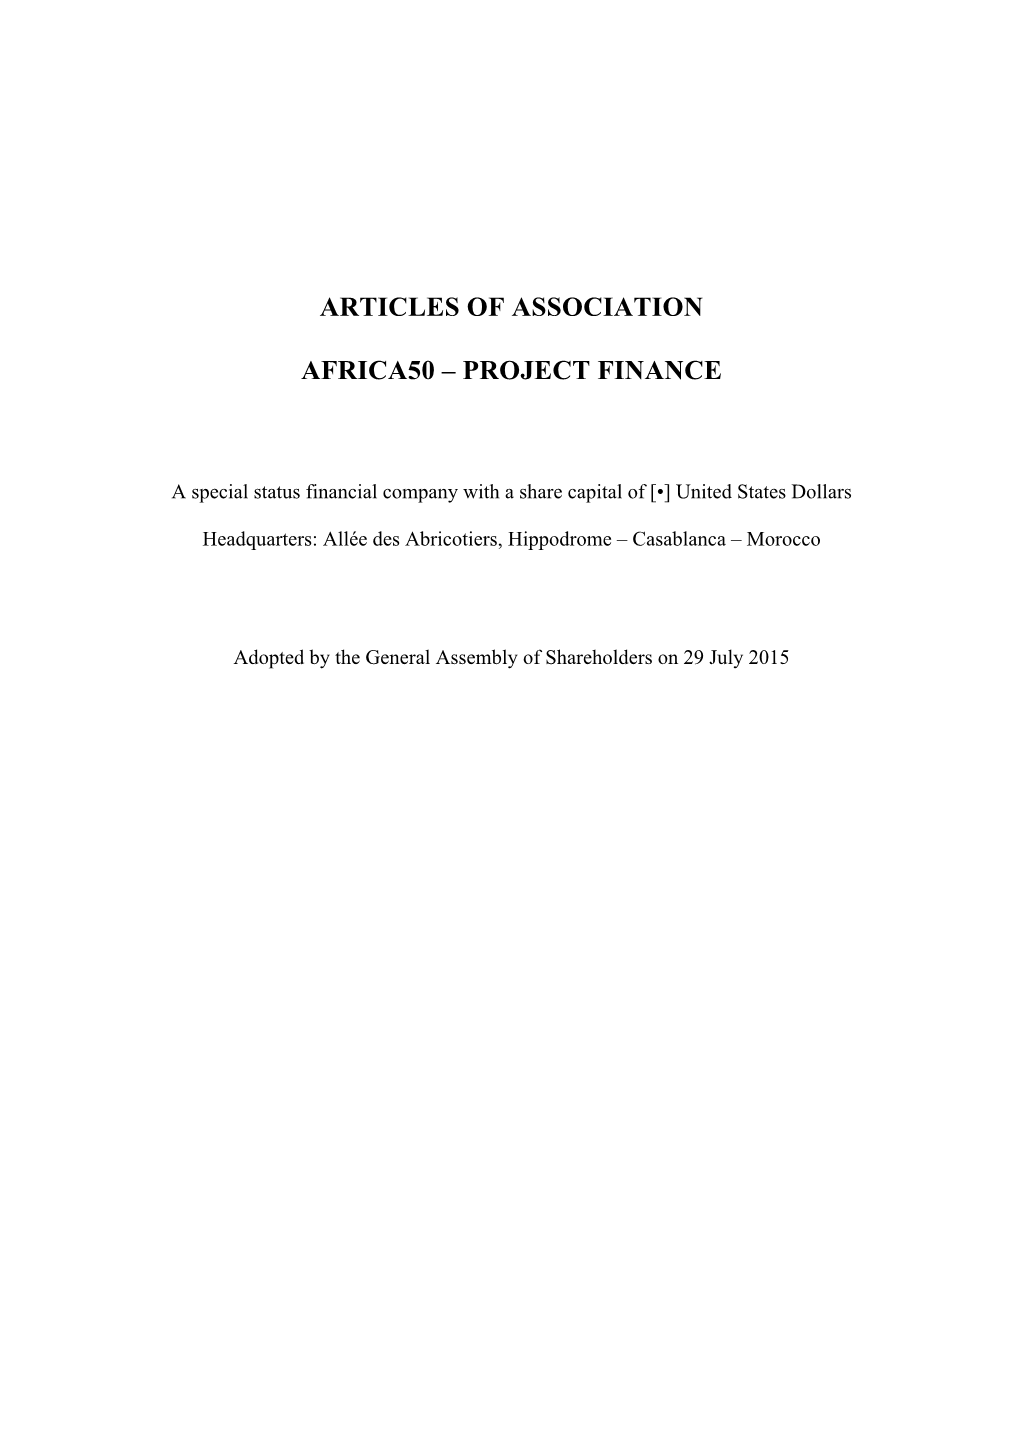 Africa50 PF--Articles of Association 200715 Final